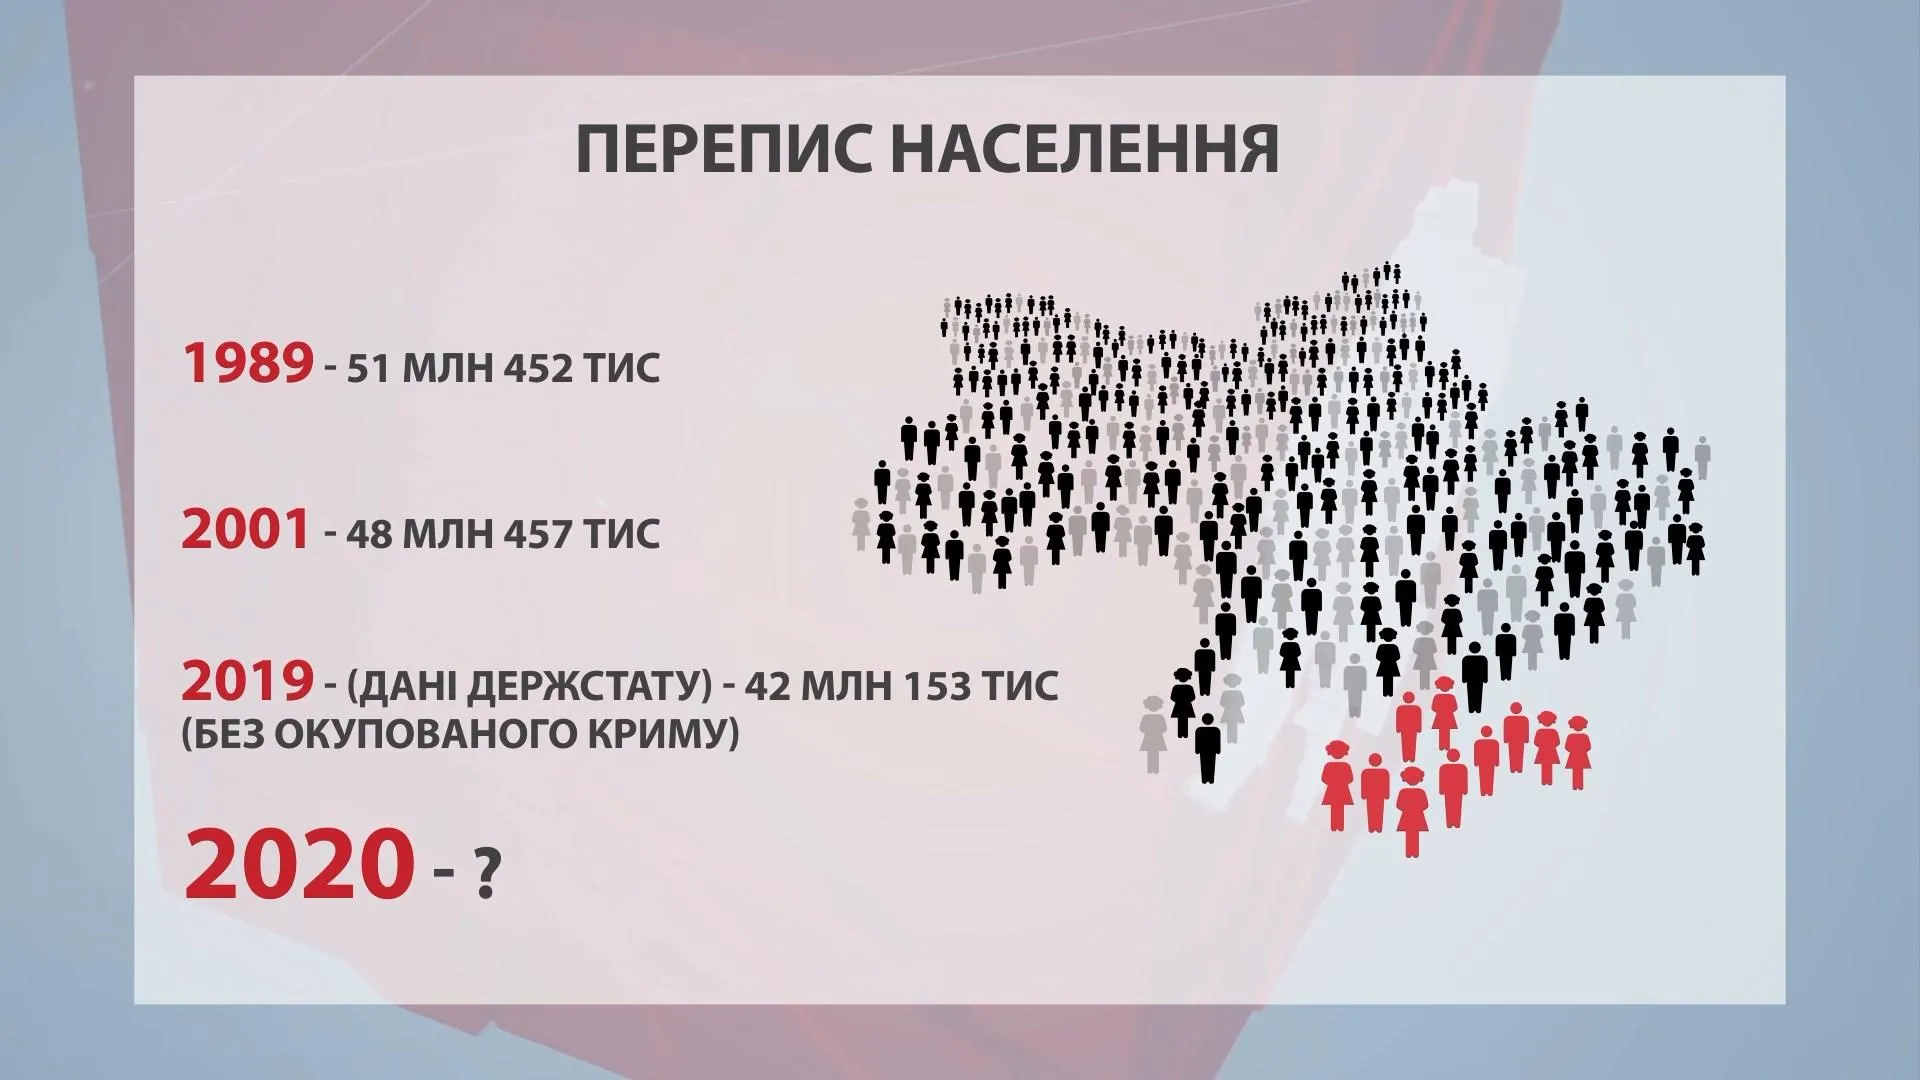 Перепис населення, Україна, статистика